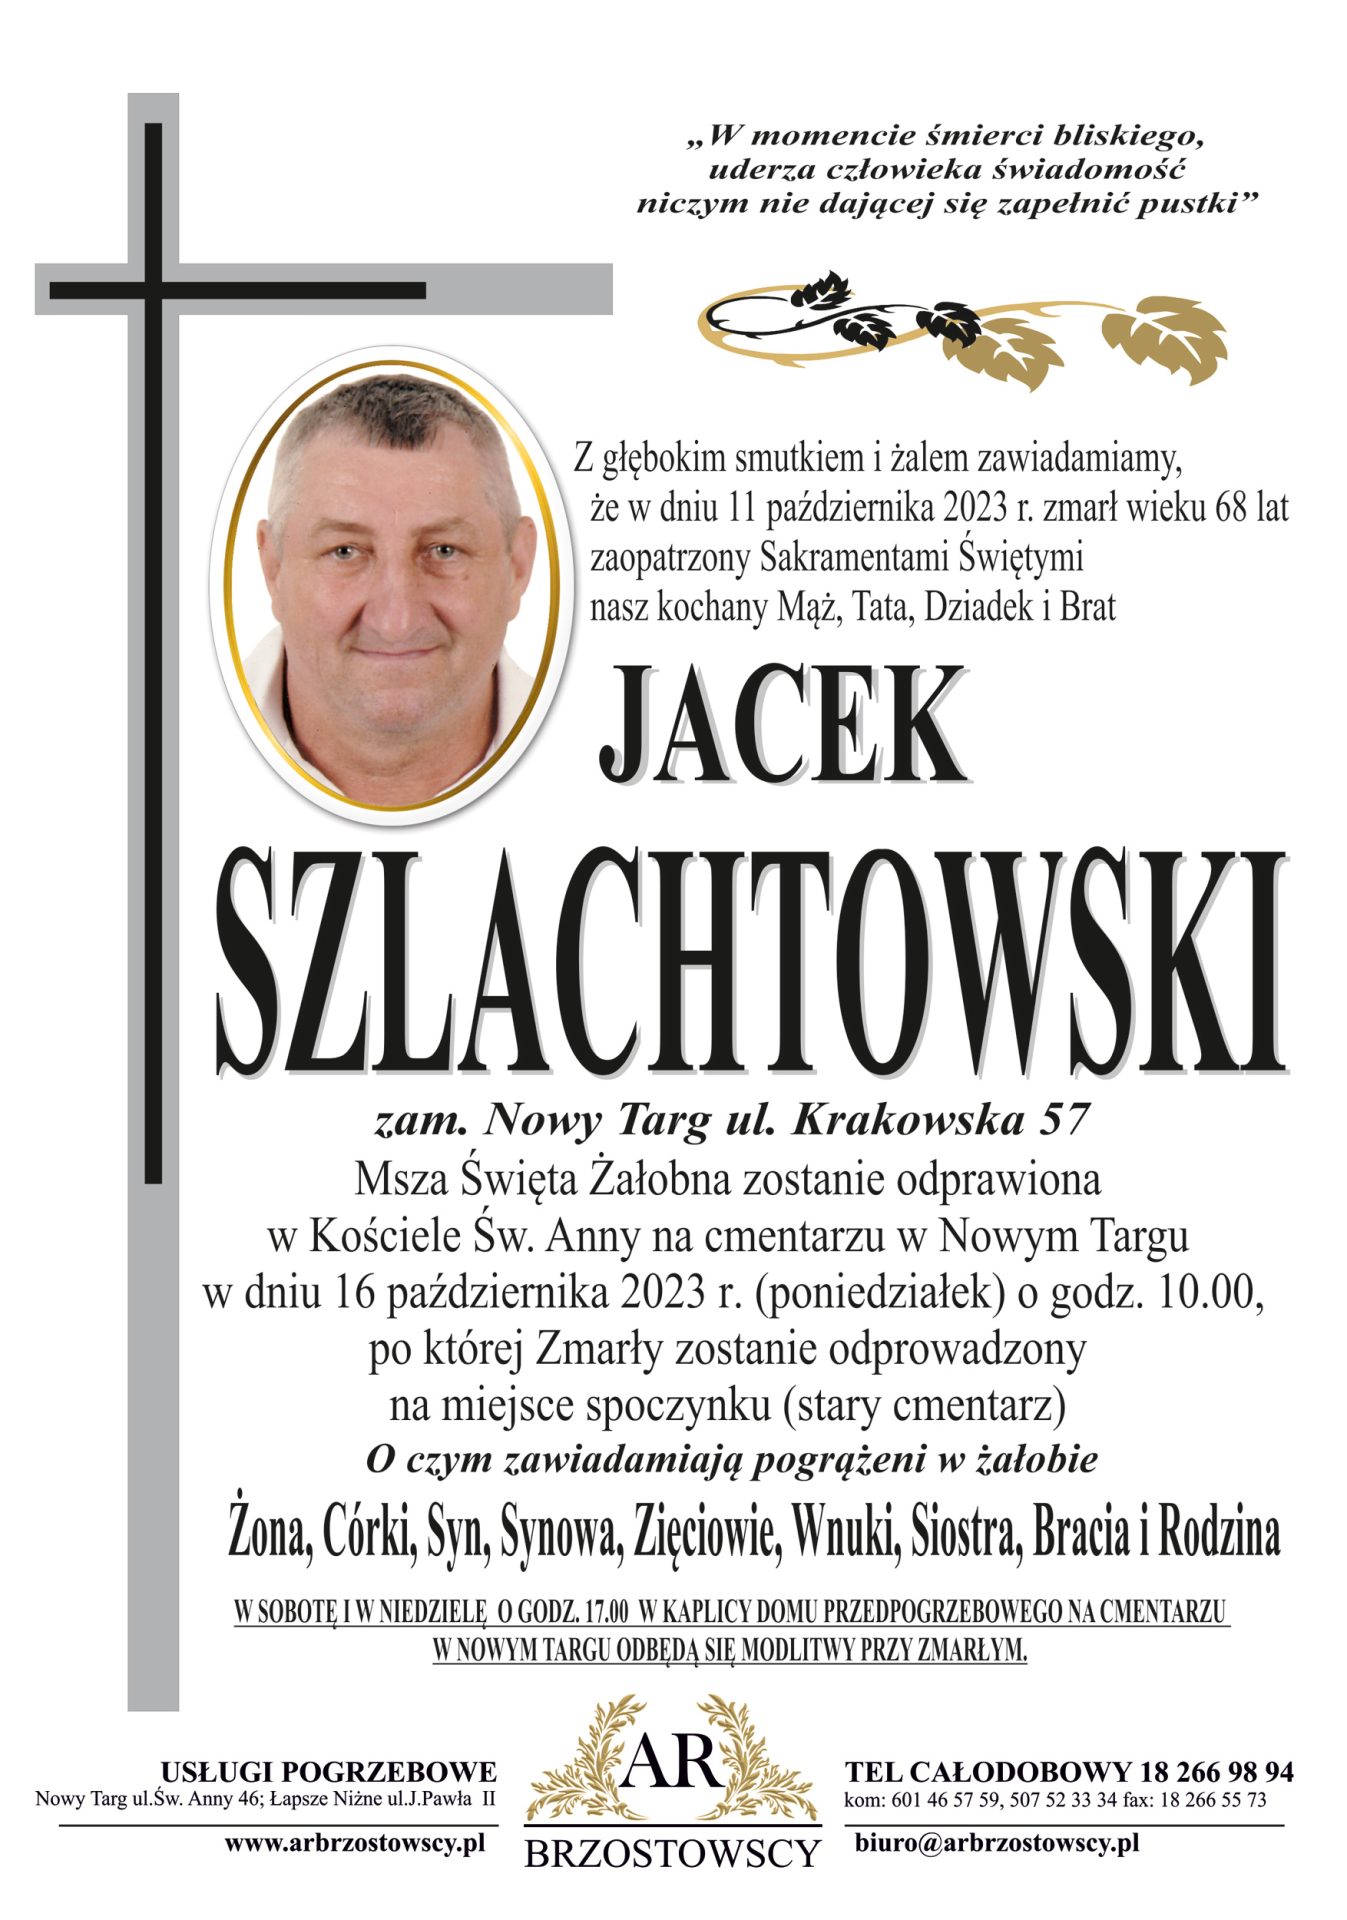 Jacek Szlachtowski